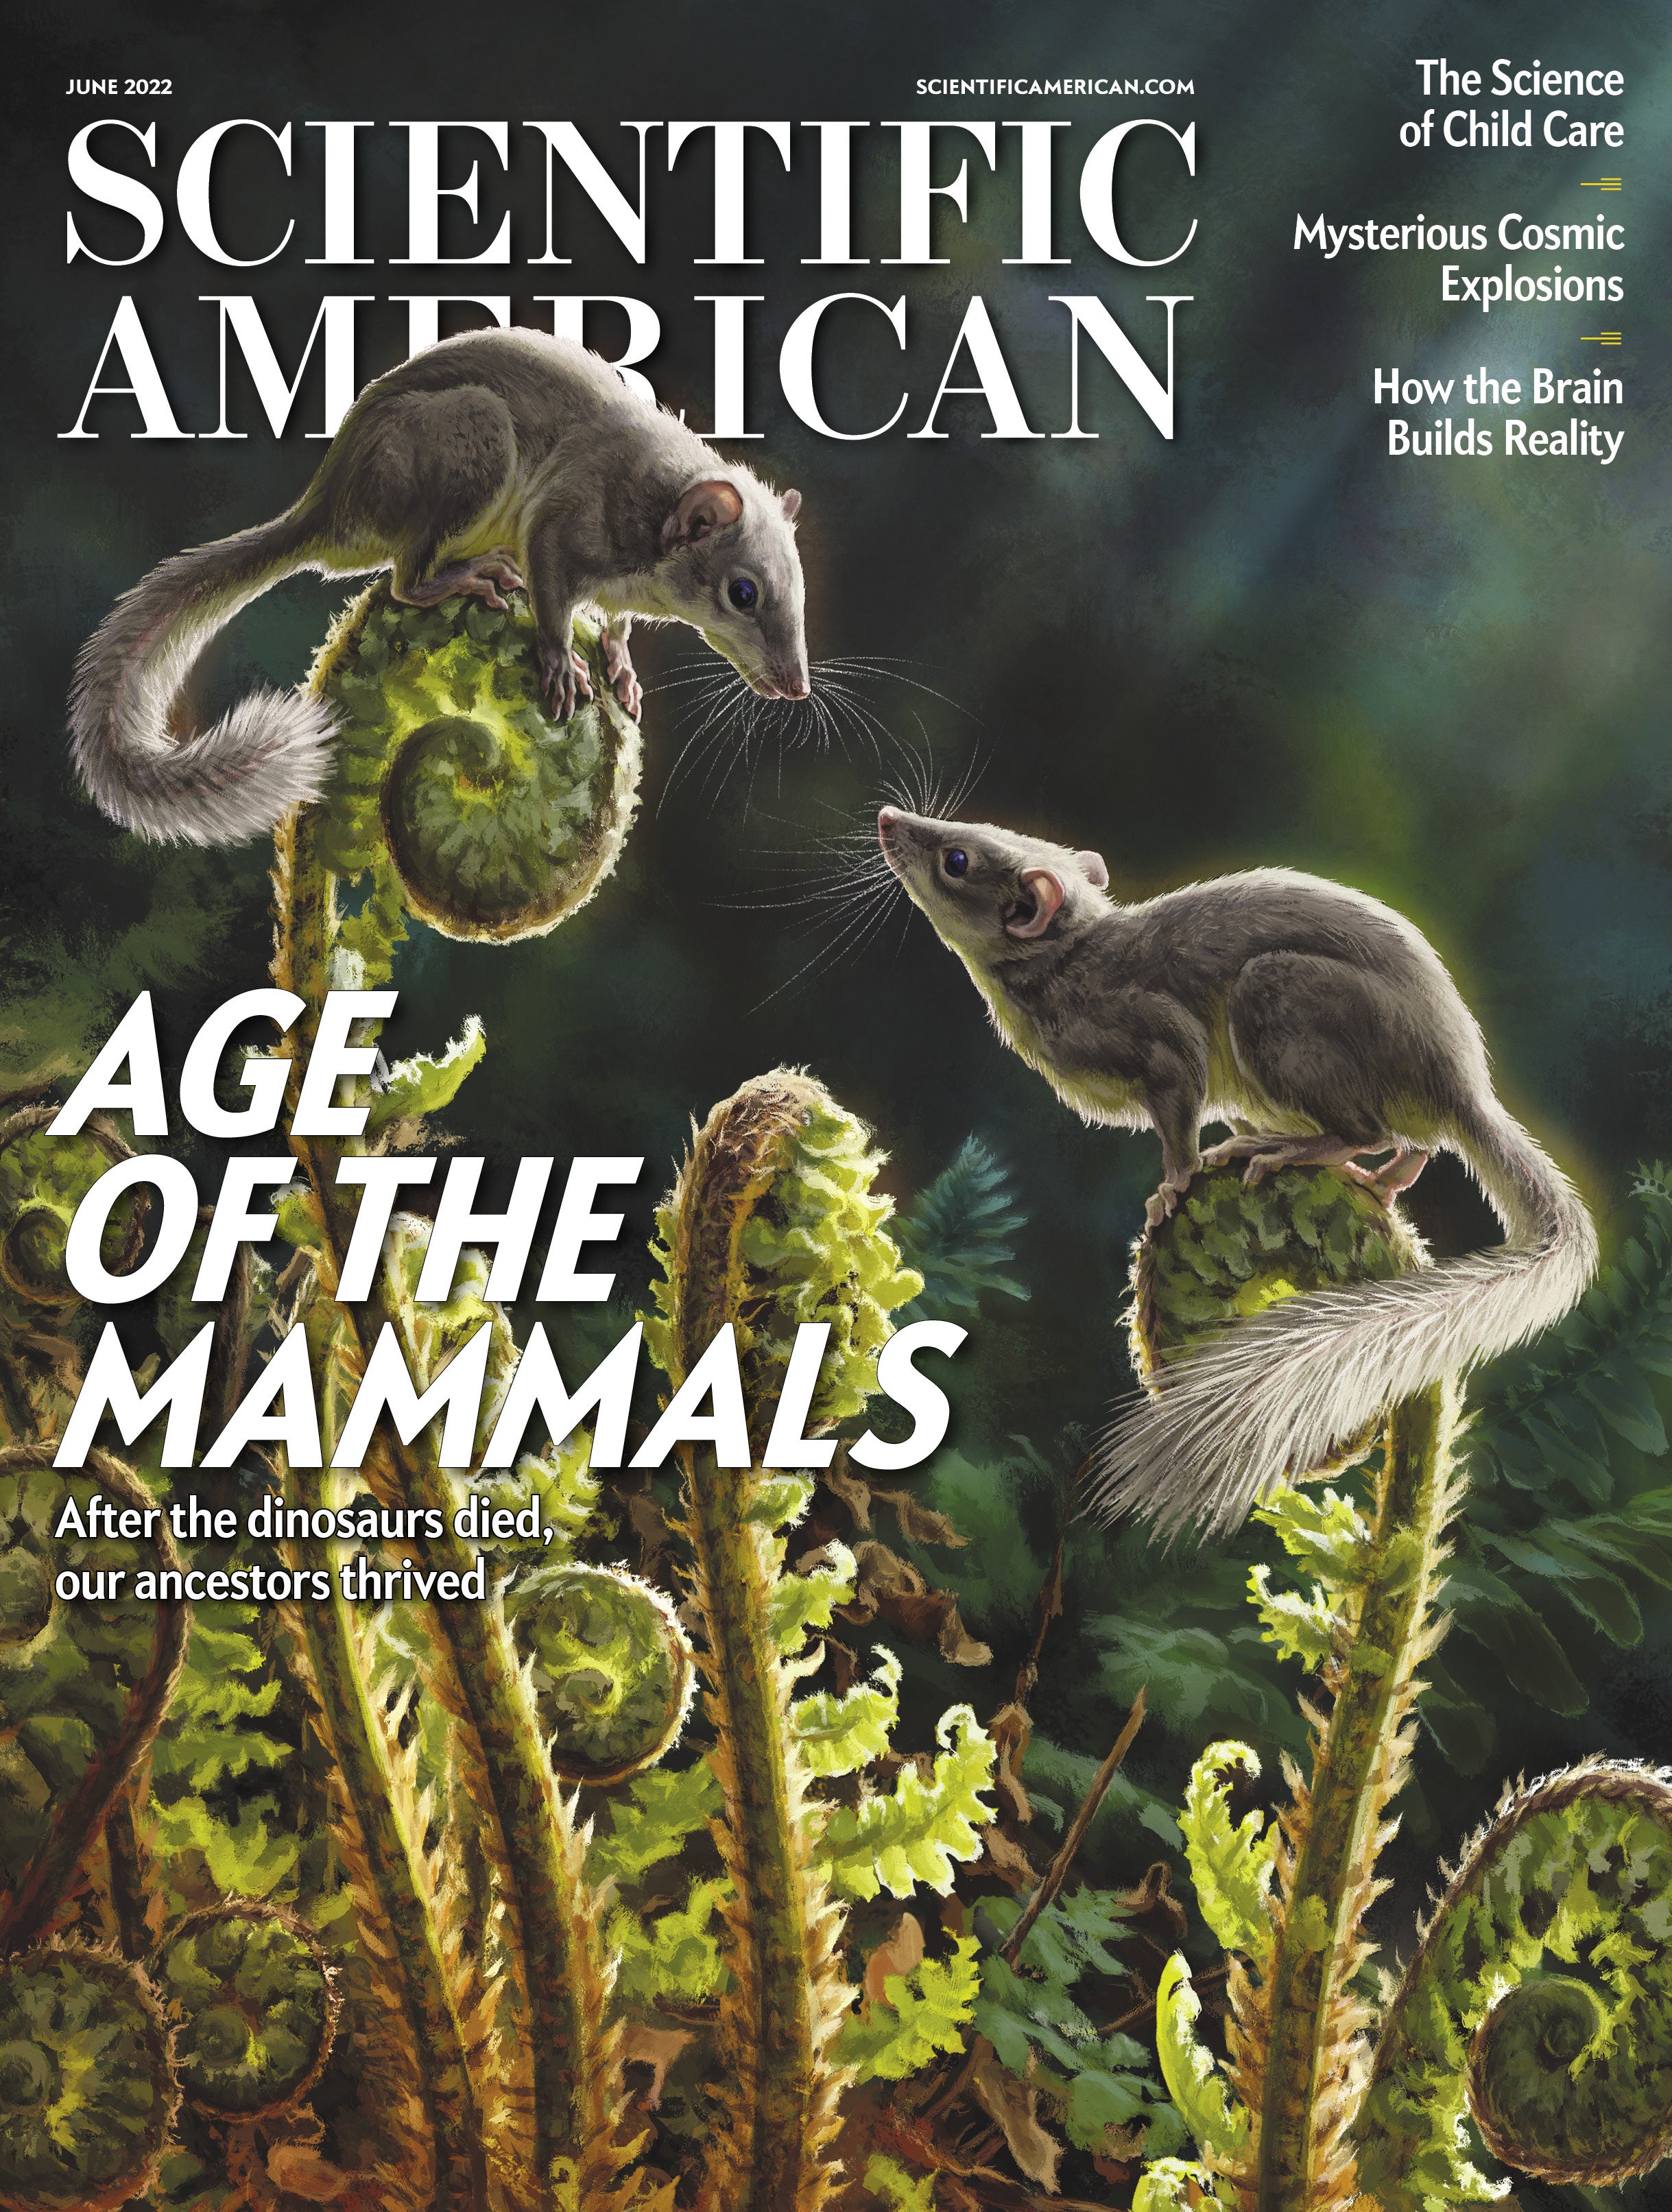 Scientific American: Age of the Mammals